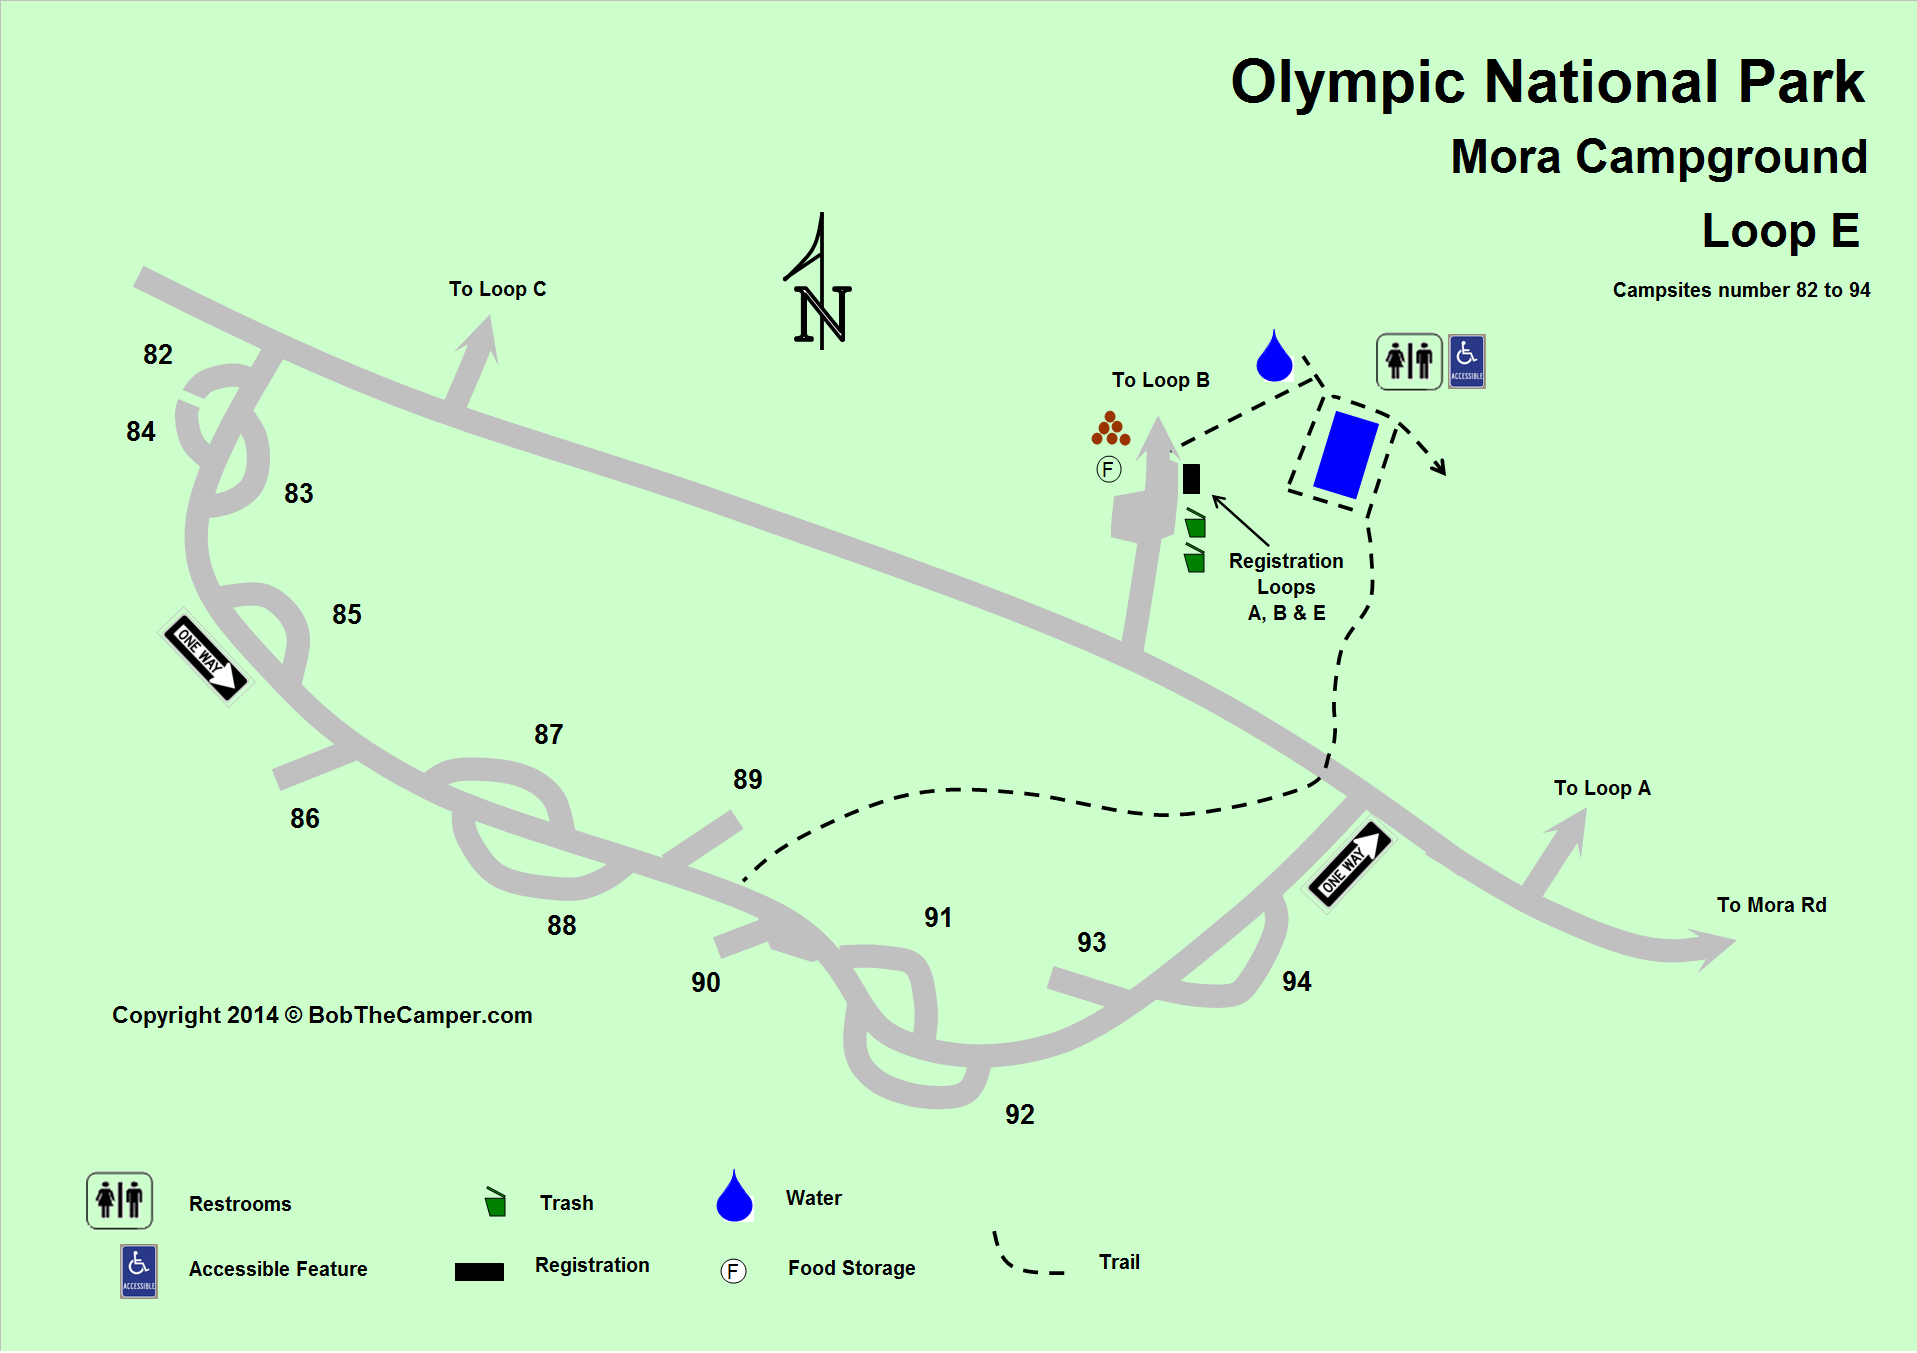 Национальный парк Олимпик на карте. Mach loop на карте. Ориентировщинская карта Олимпик.